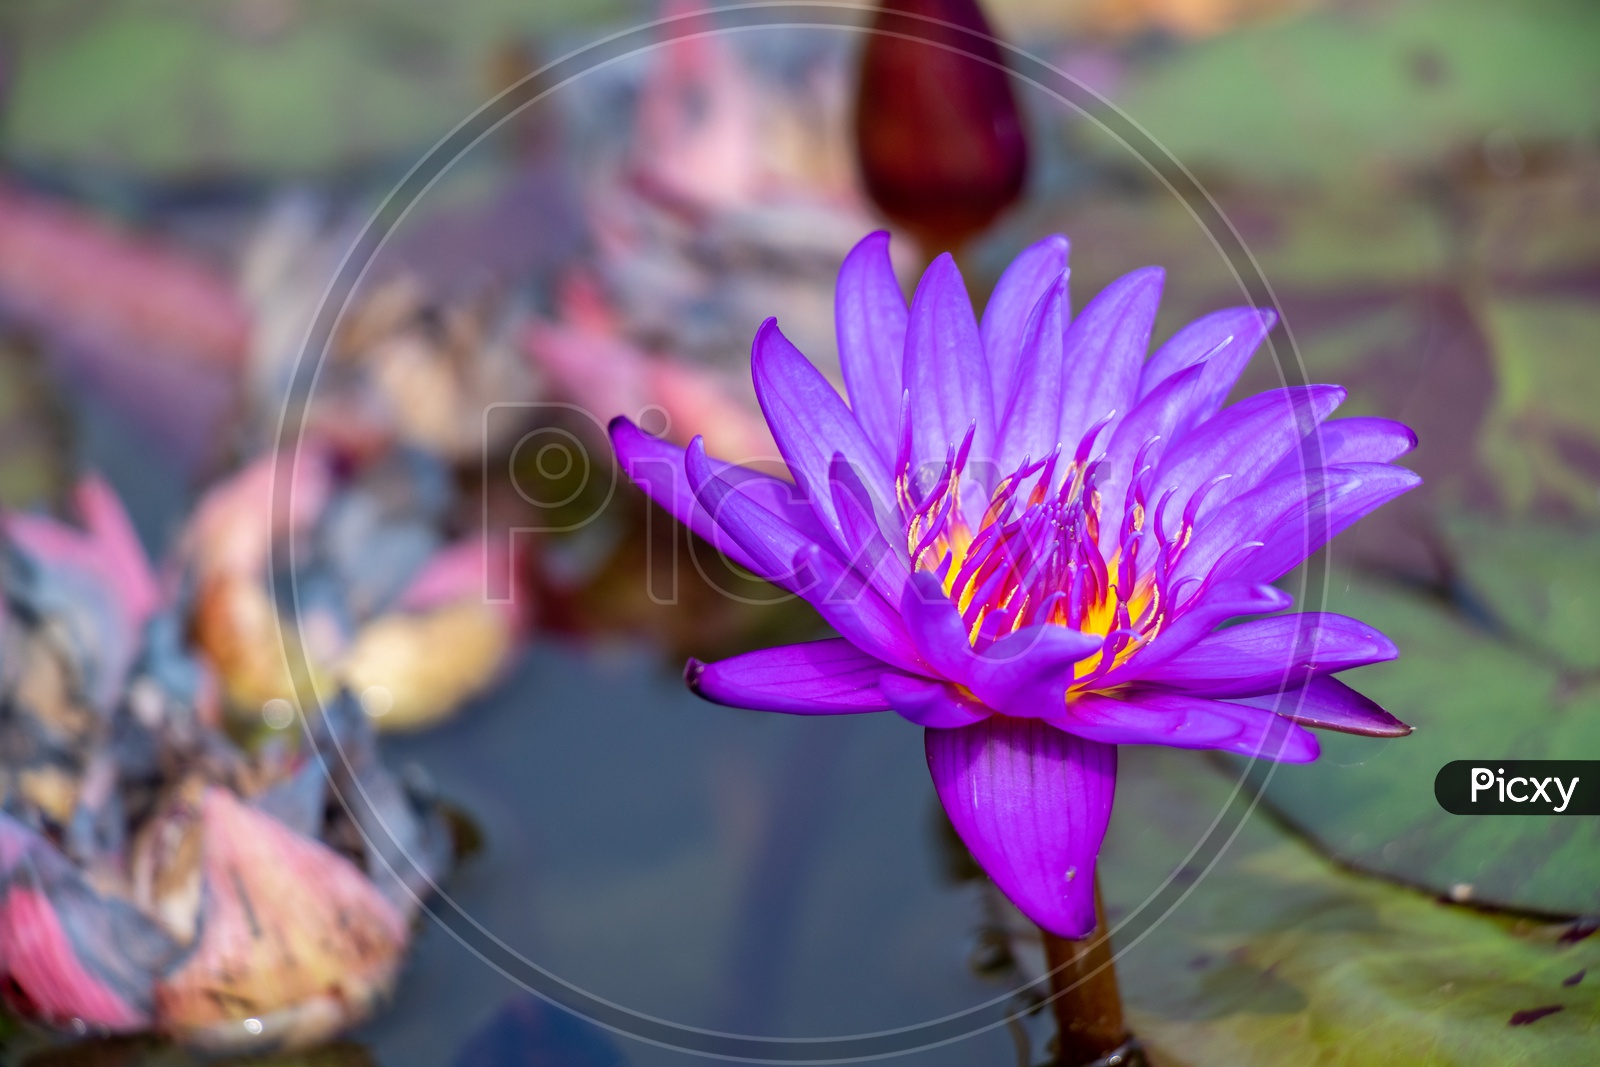 Purple Water Lilly Flower